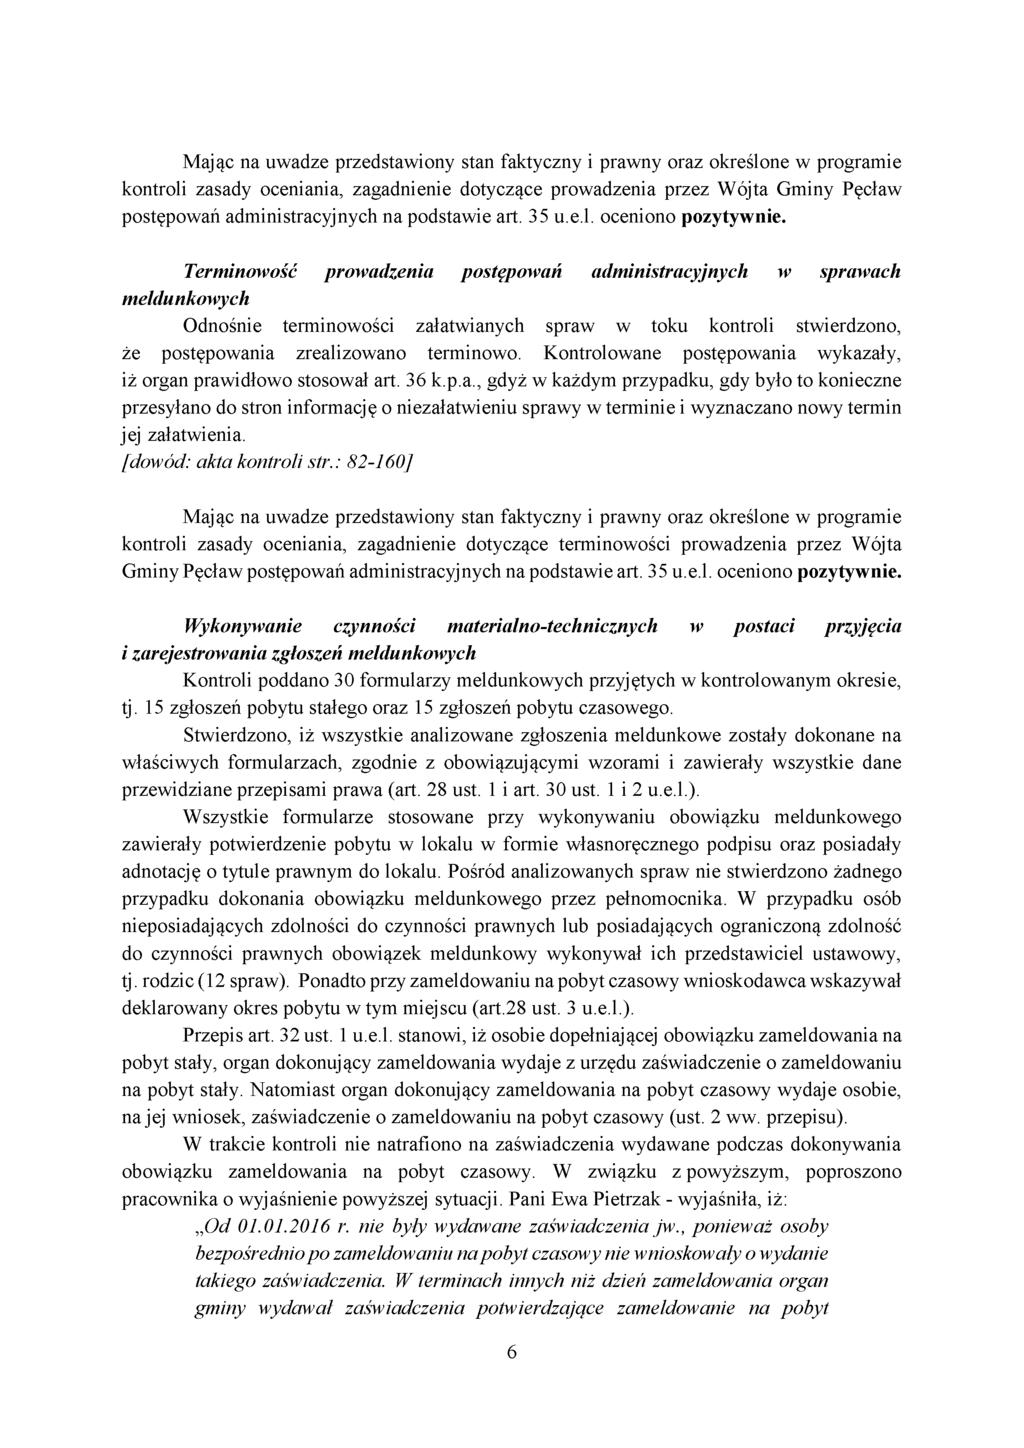 kontroli zasady oceniania, zagadnienie dotyczące prowadzenia przez Wójta Gminy Pęcław postępowań administracyjnych na podstawie art. 35 u.e.l. oceniono pozytywnie.